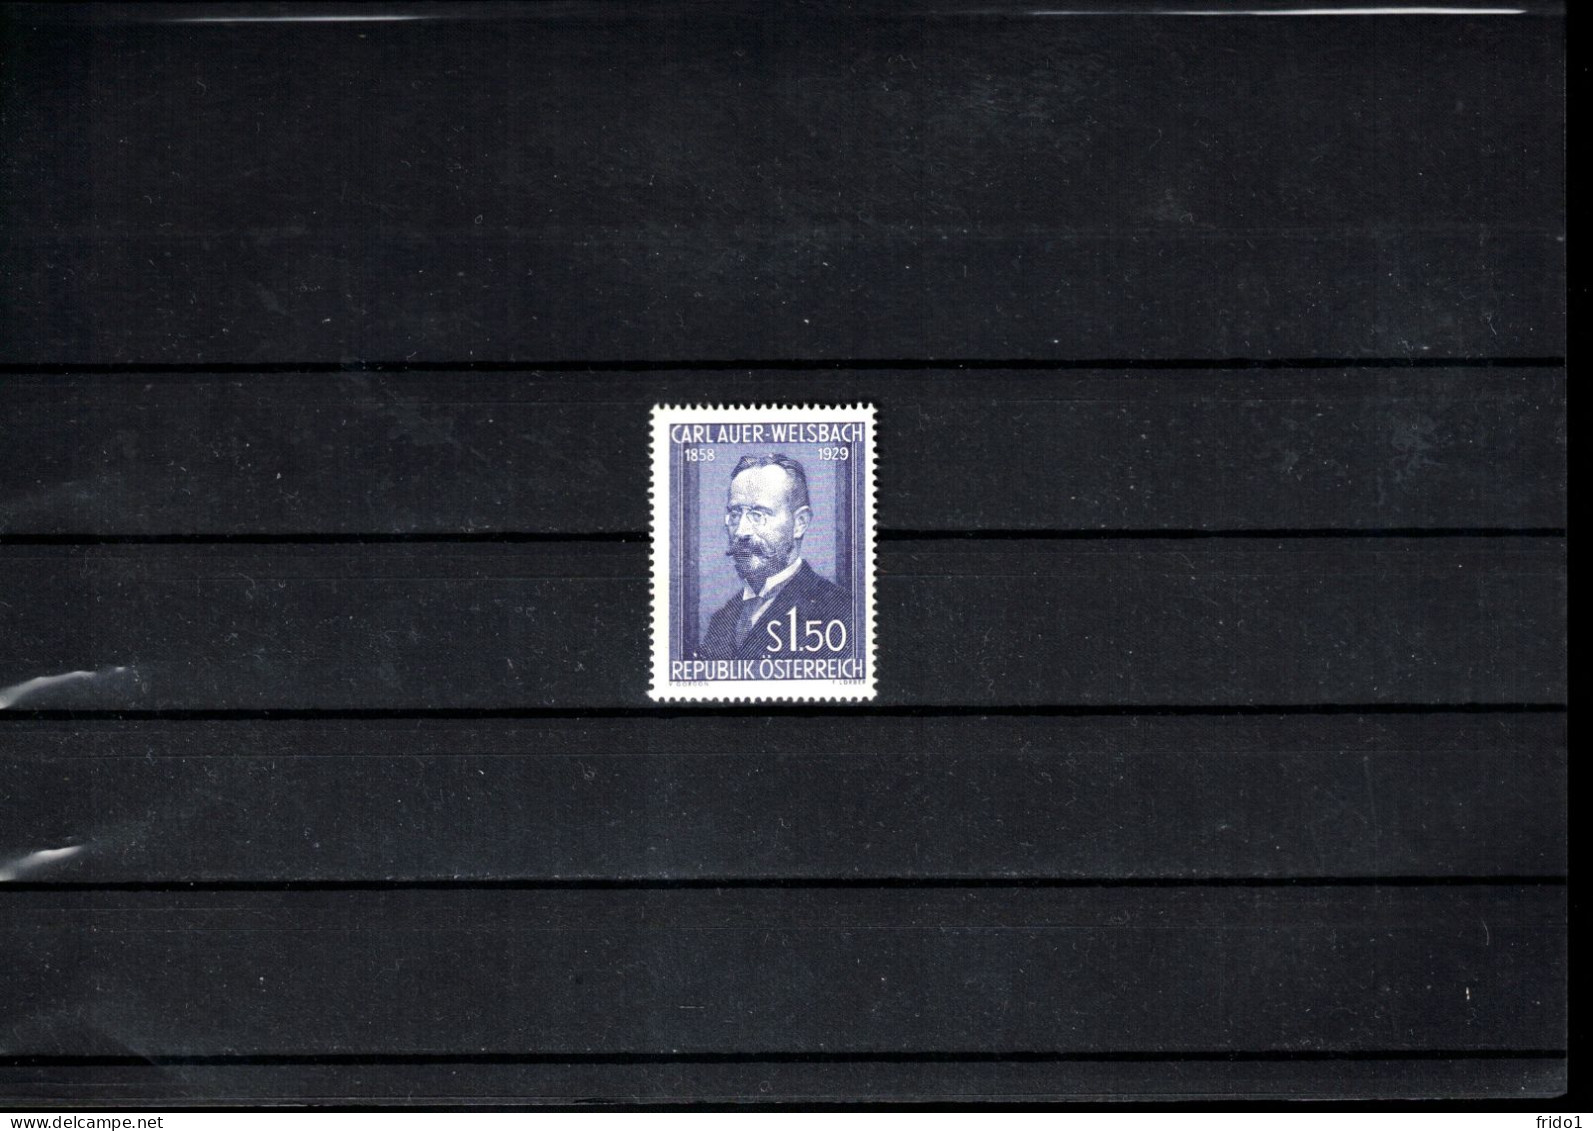 Austria / Oestereich 1954 Carl Freiherr Auer Ritter Von Weisbach Postfrisch / MNH - Unused Stamps